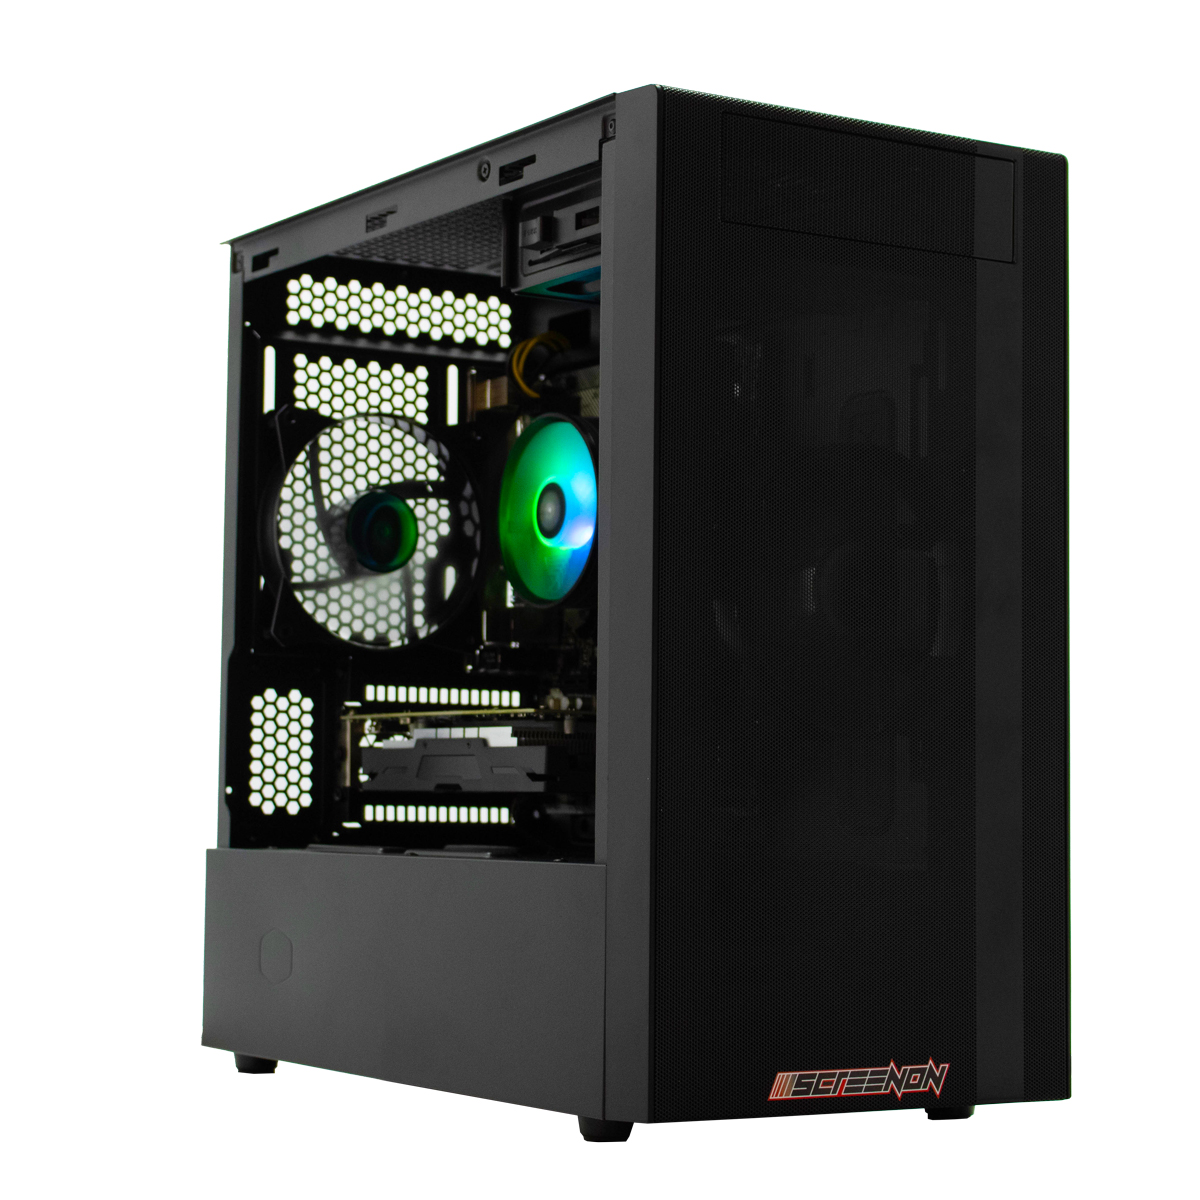 SCREENON Z401135 – V1, 8 GB Gaming PC, 240 Graphics Intel SSD, GB UHD RAM, 610